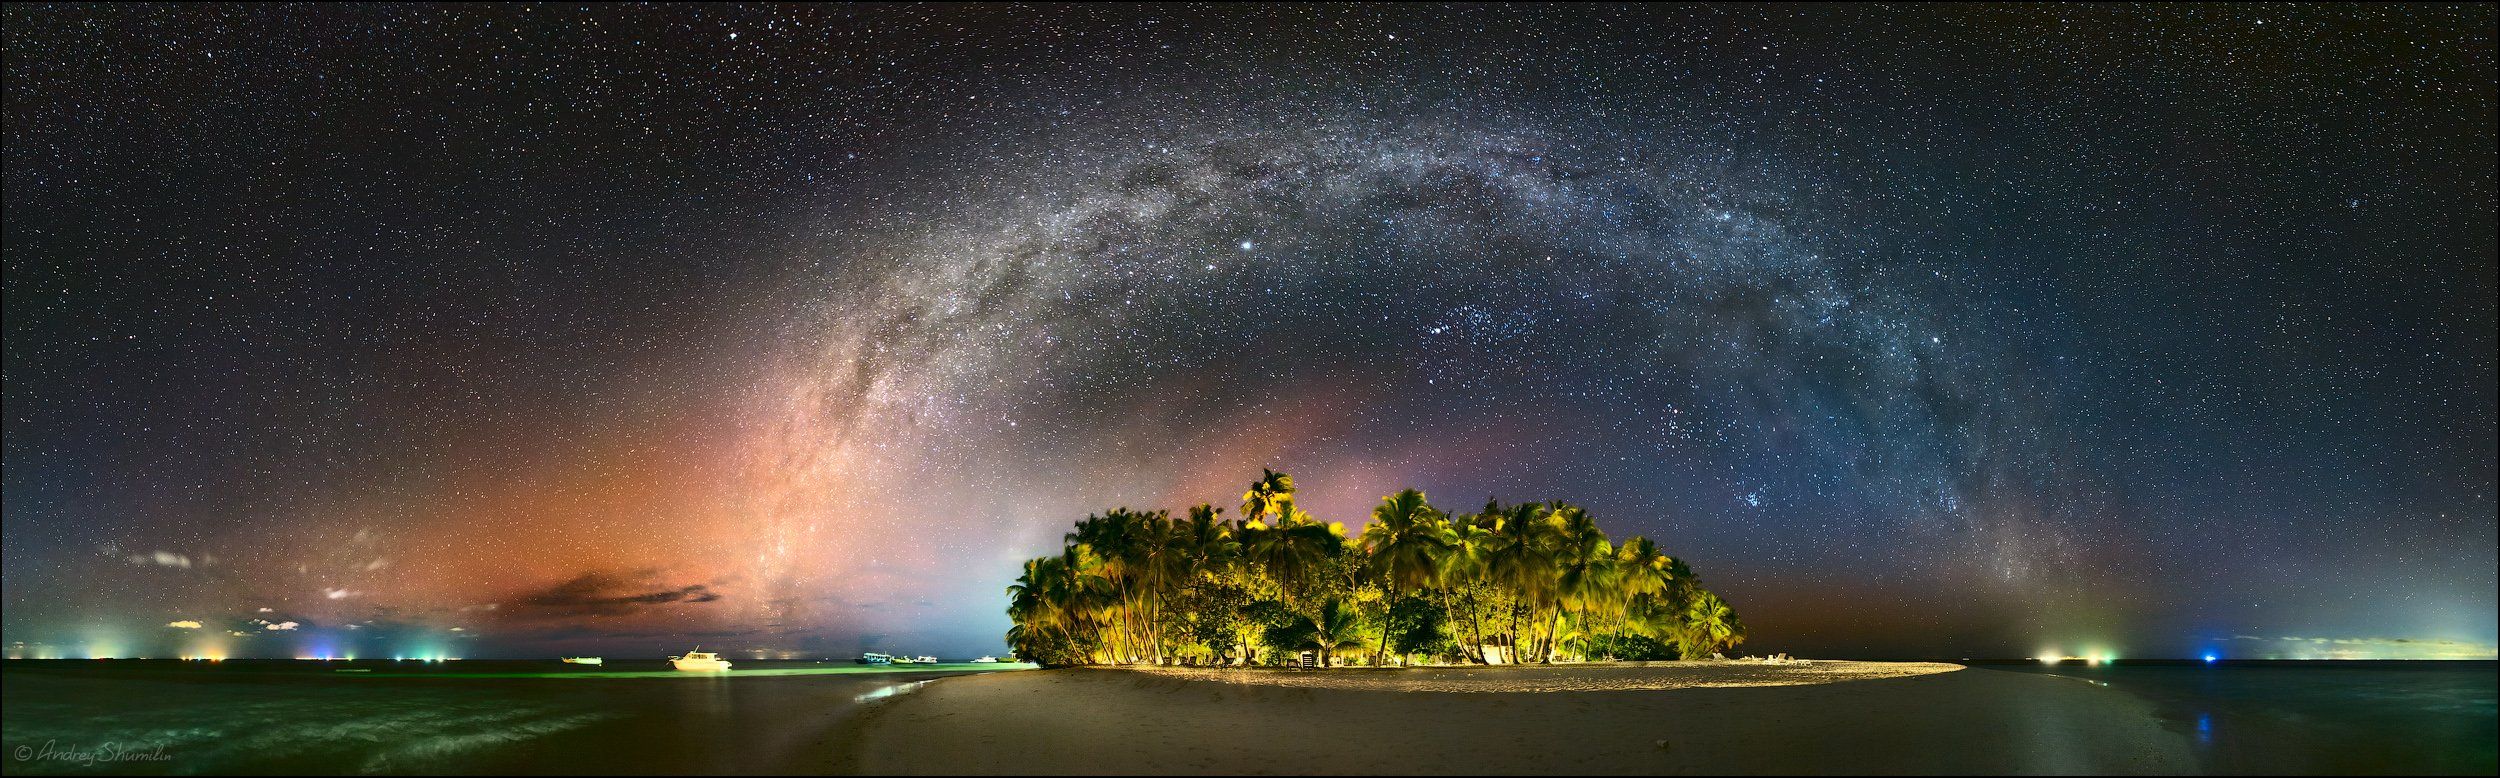 мальдивы, млечный путь, галактика, звезды, звездное небо, Андрей Шумилин